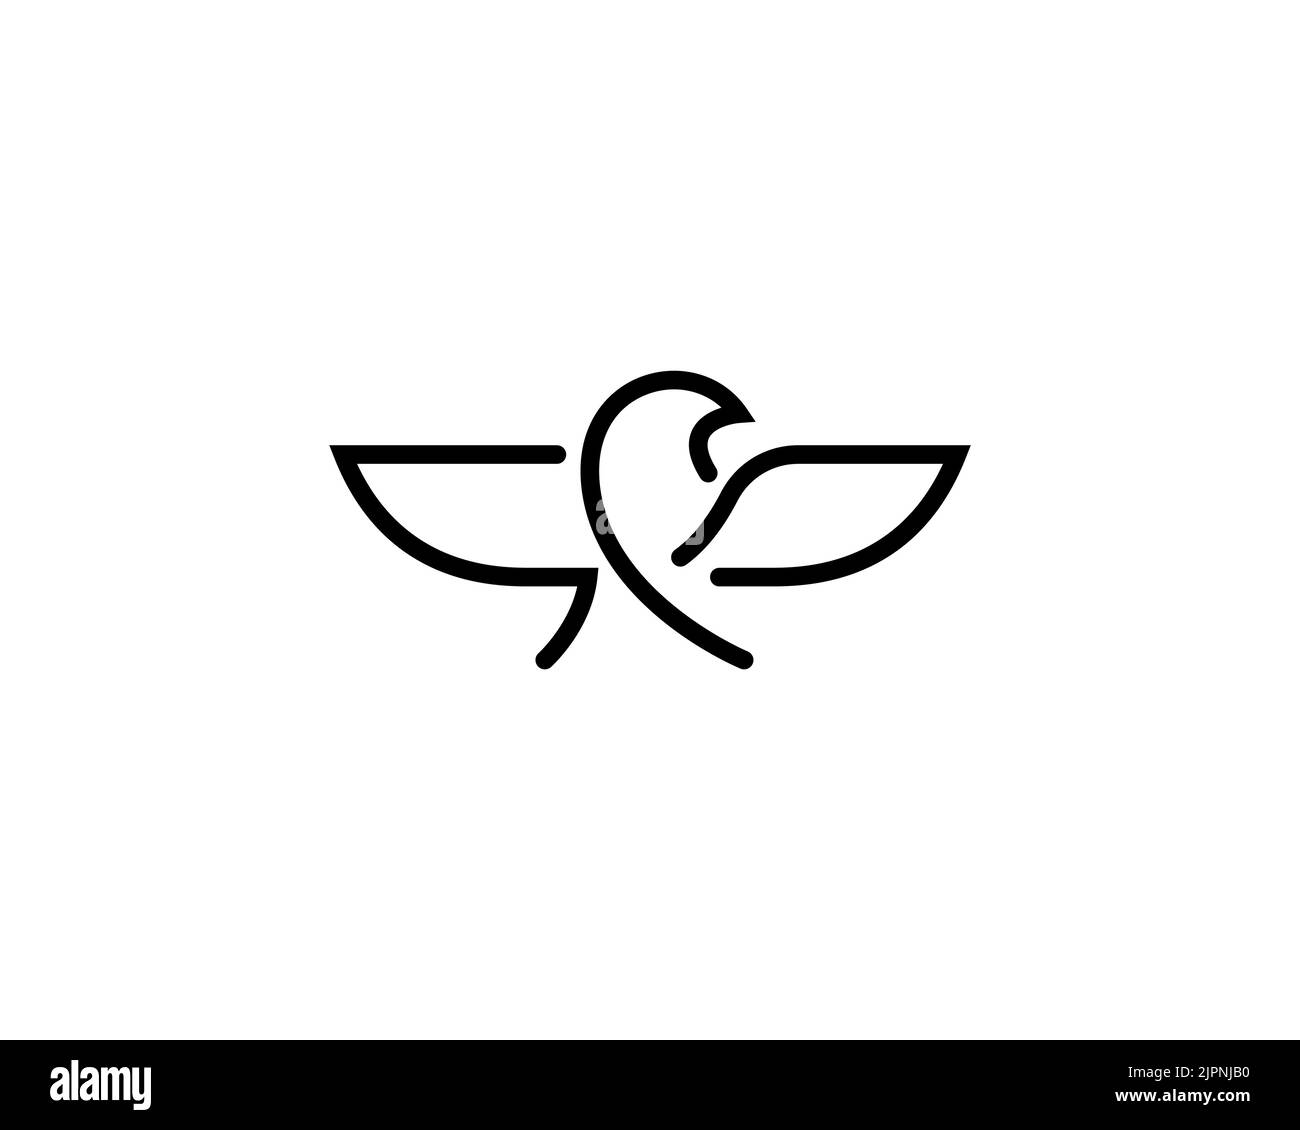 Ein minimalistisches schwarzes Logo-Design eines Adlers, der seine Flügel auf weißem Hintergrund ausbreitet Stock Vektor